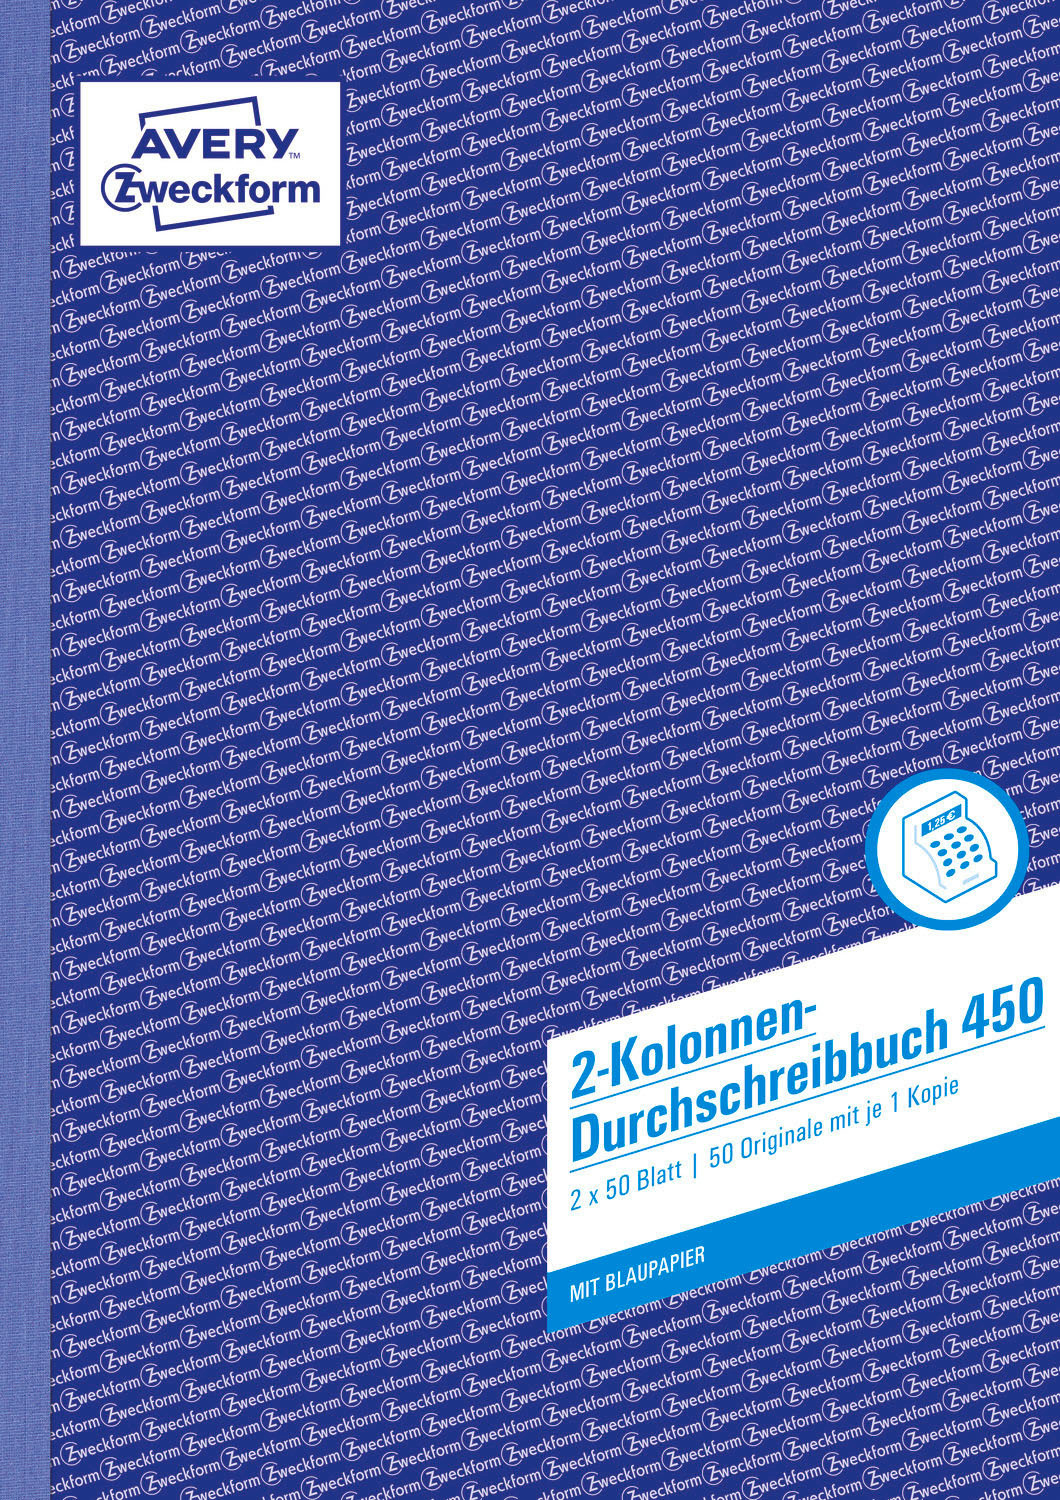 ZWECKFORM 210 Kolonnenbuch 297 AVERY 297 Blatt mm 450 mm x 2x50 x 210 A4